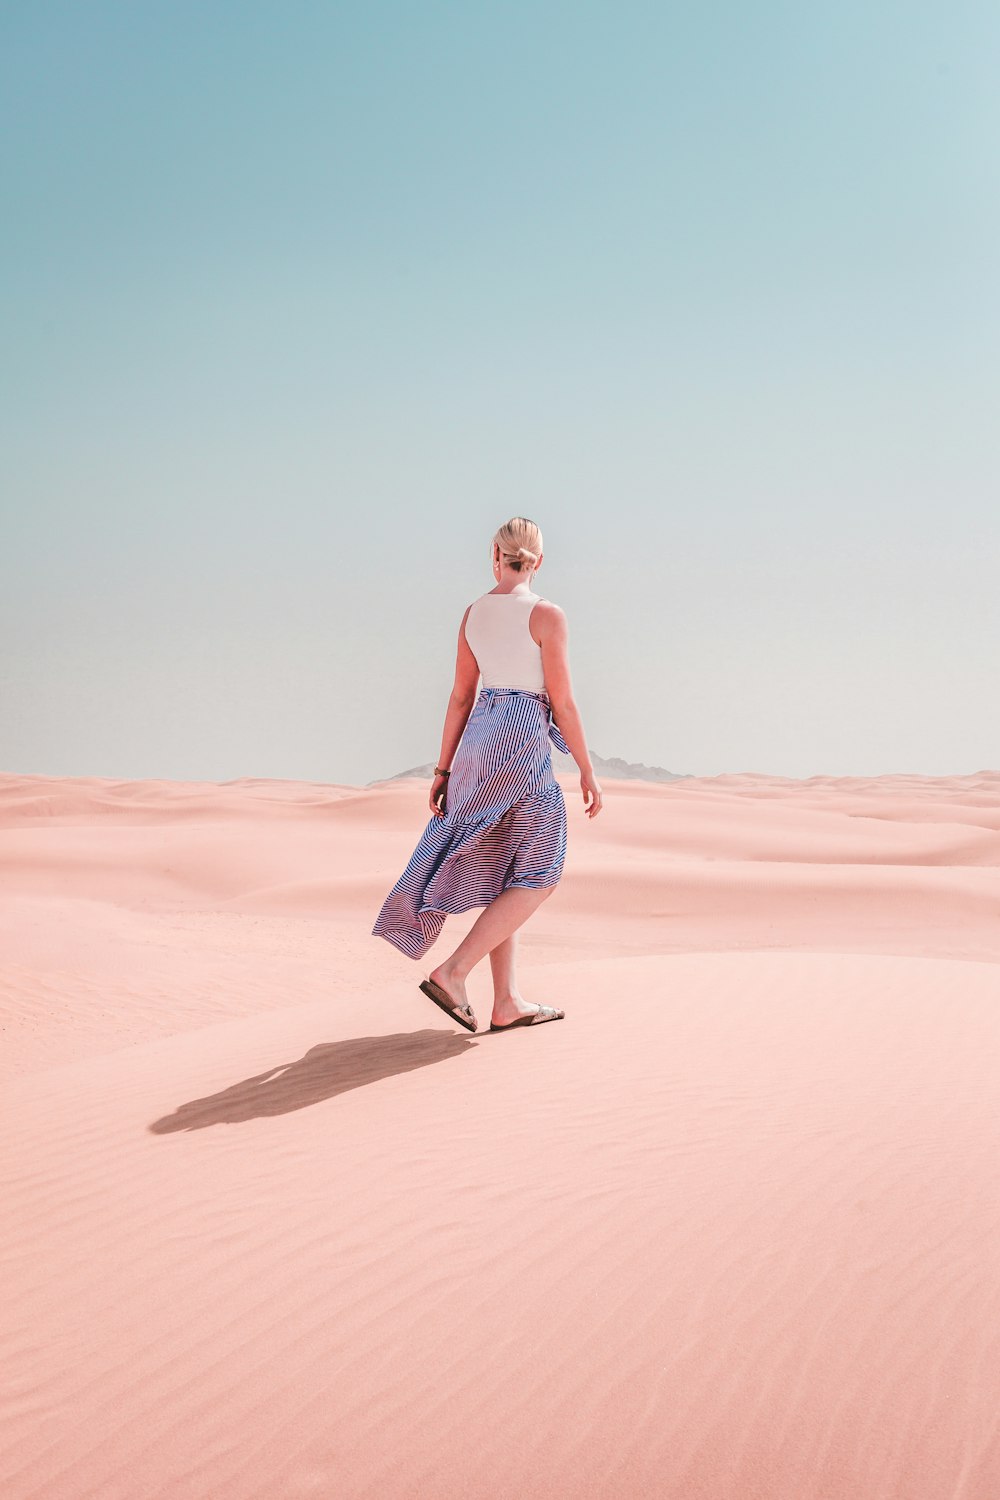 Frau trägt Kleid Spaziergänge in der Wüste während des Tages